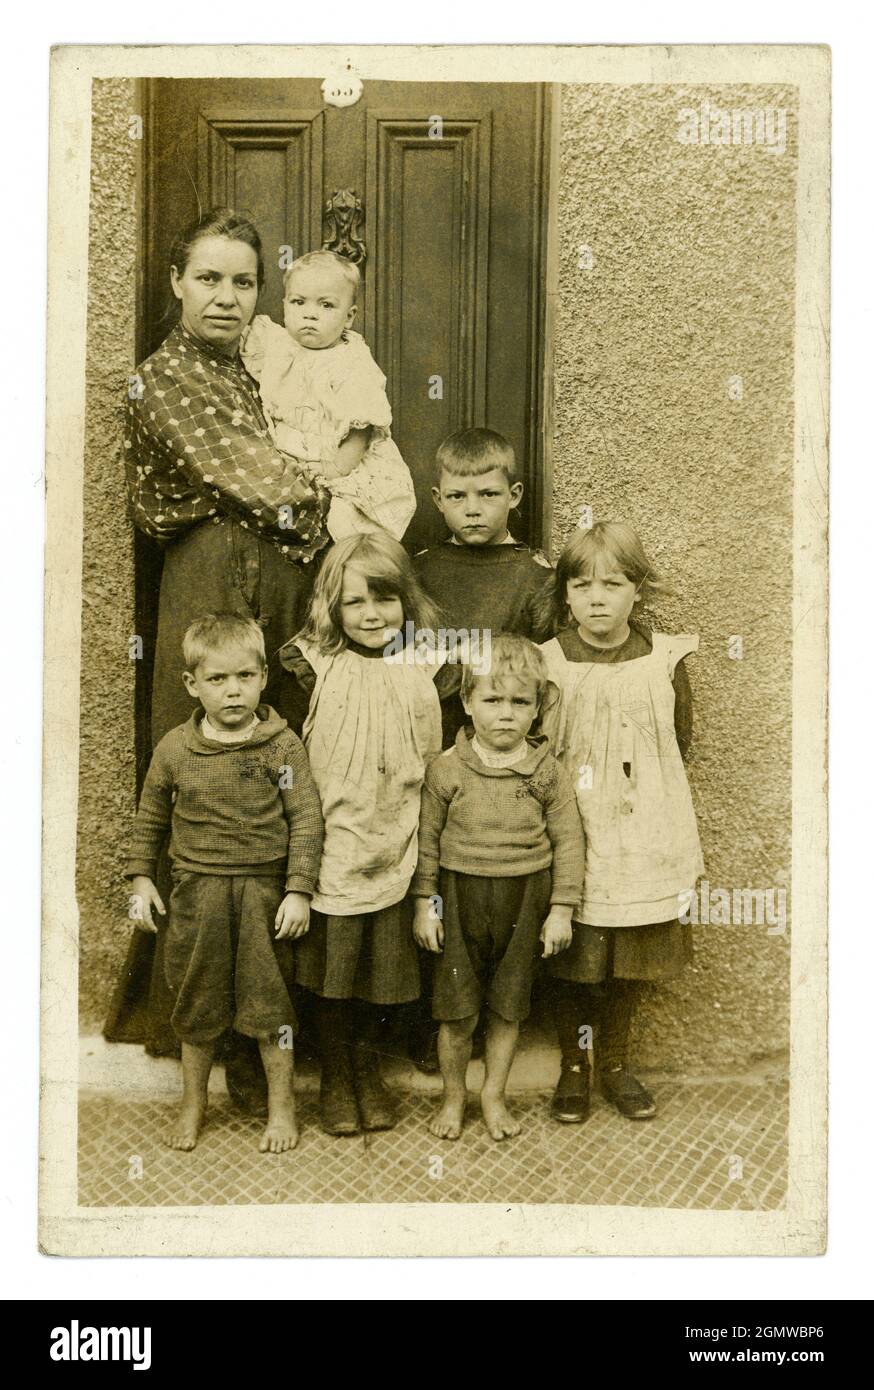 Original, muy claro, era eduardiana postal retrato de la madre pobre típica  de la clase trabajadora Con una familia grande de seis niños pequeños  serios-mirando y un bebé en sus brazos, algunos